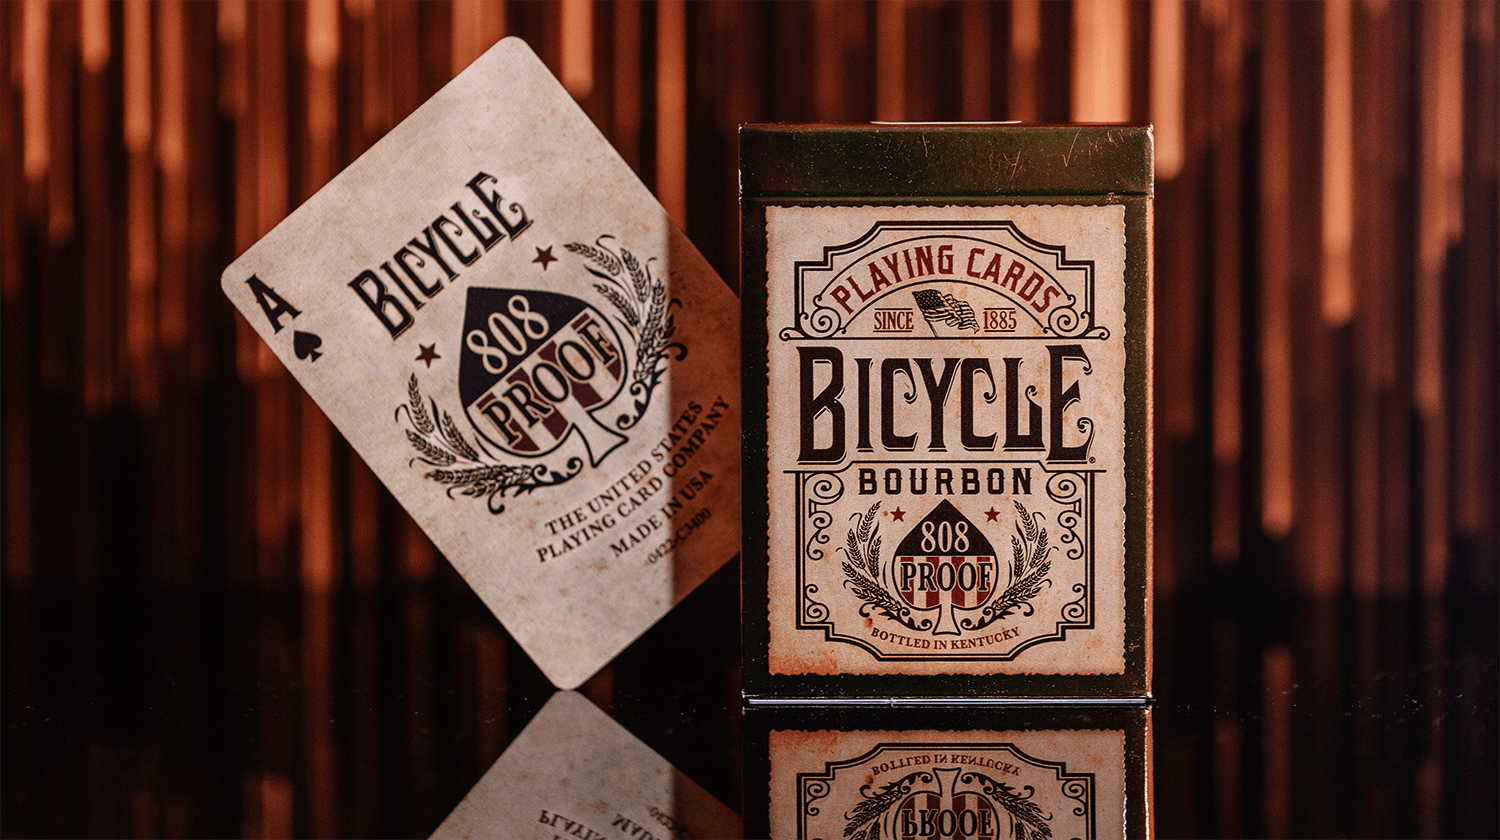 Von einer Bicycle Creatives Bourbon Kartenschachtel ist die Vorderseite zu sehen, daneben ist die Vorderseite einer Karte zu sehen.